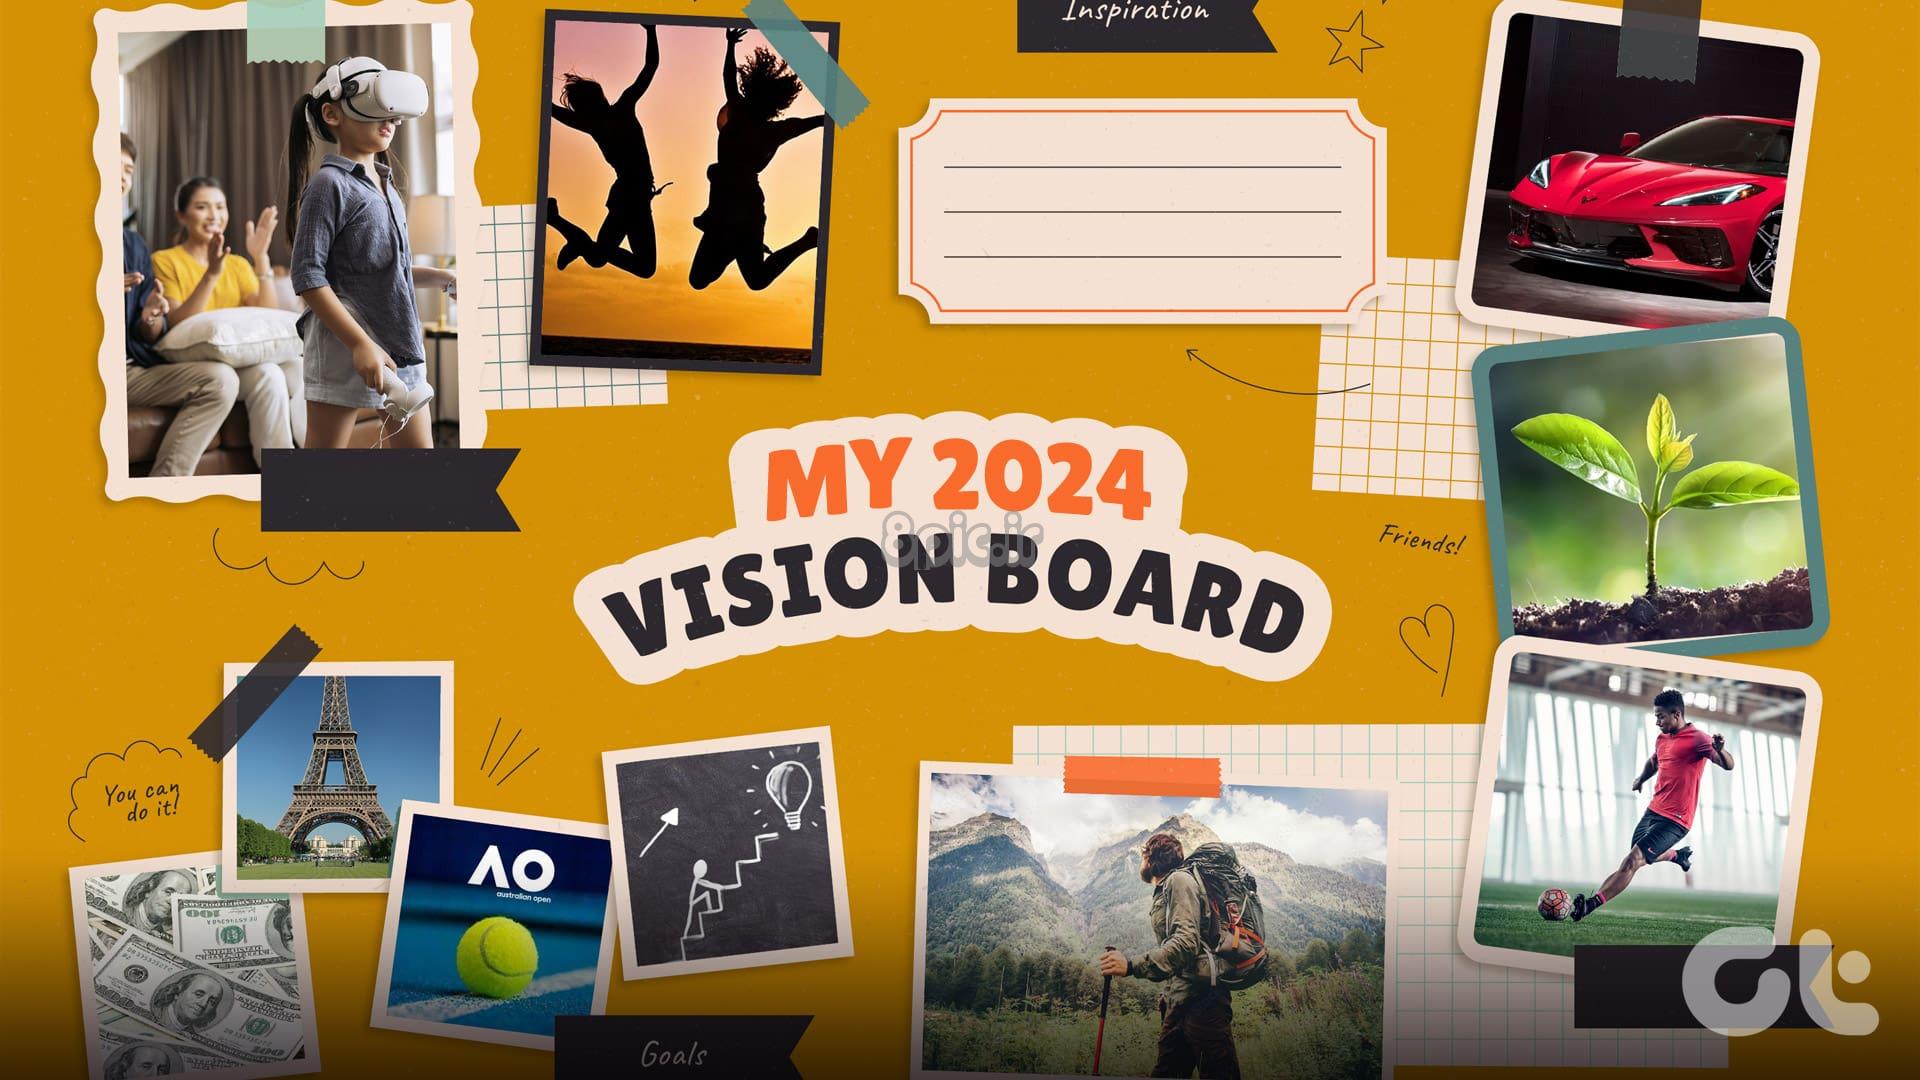 برنامه های رایگان برای ایجاد Vision Board